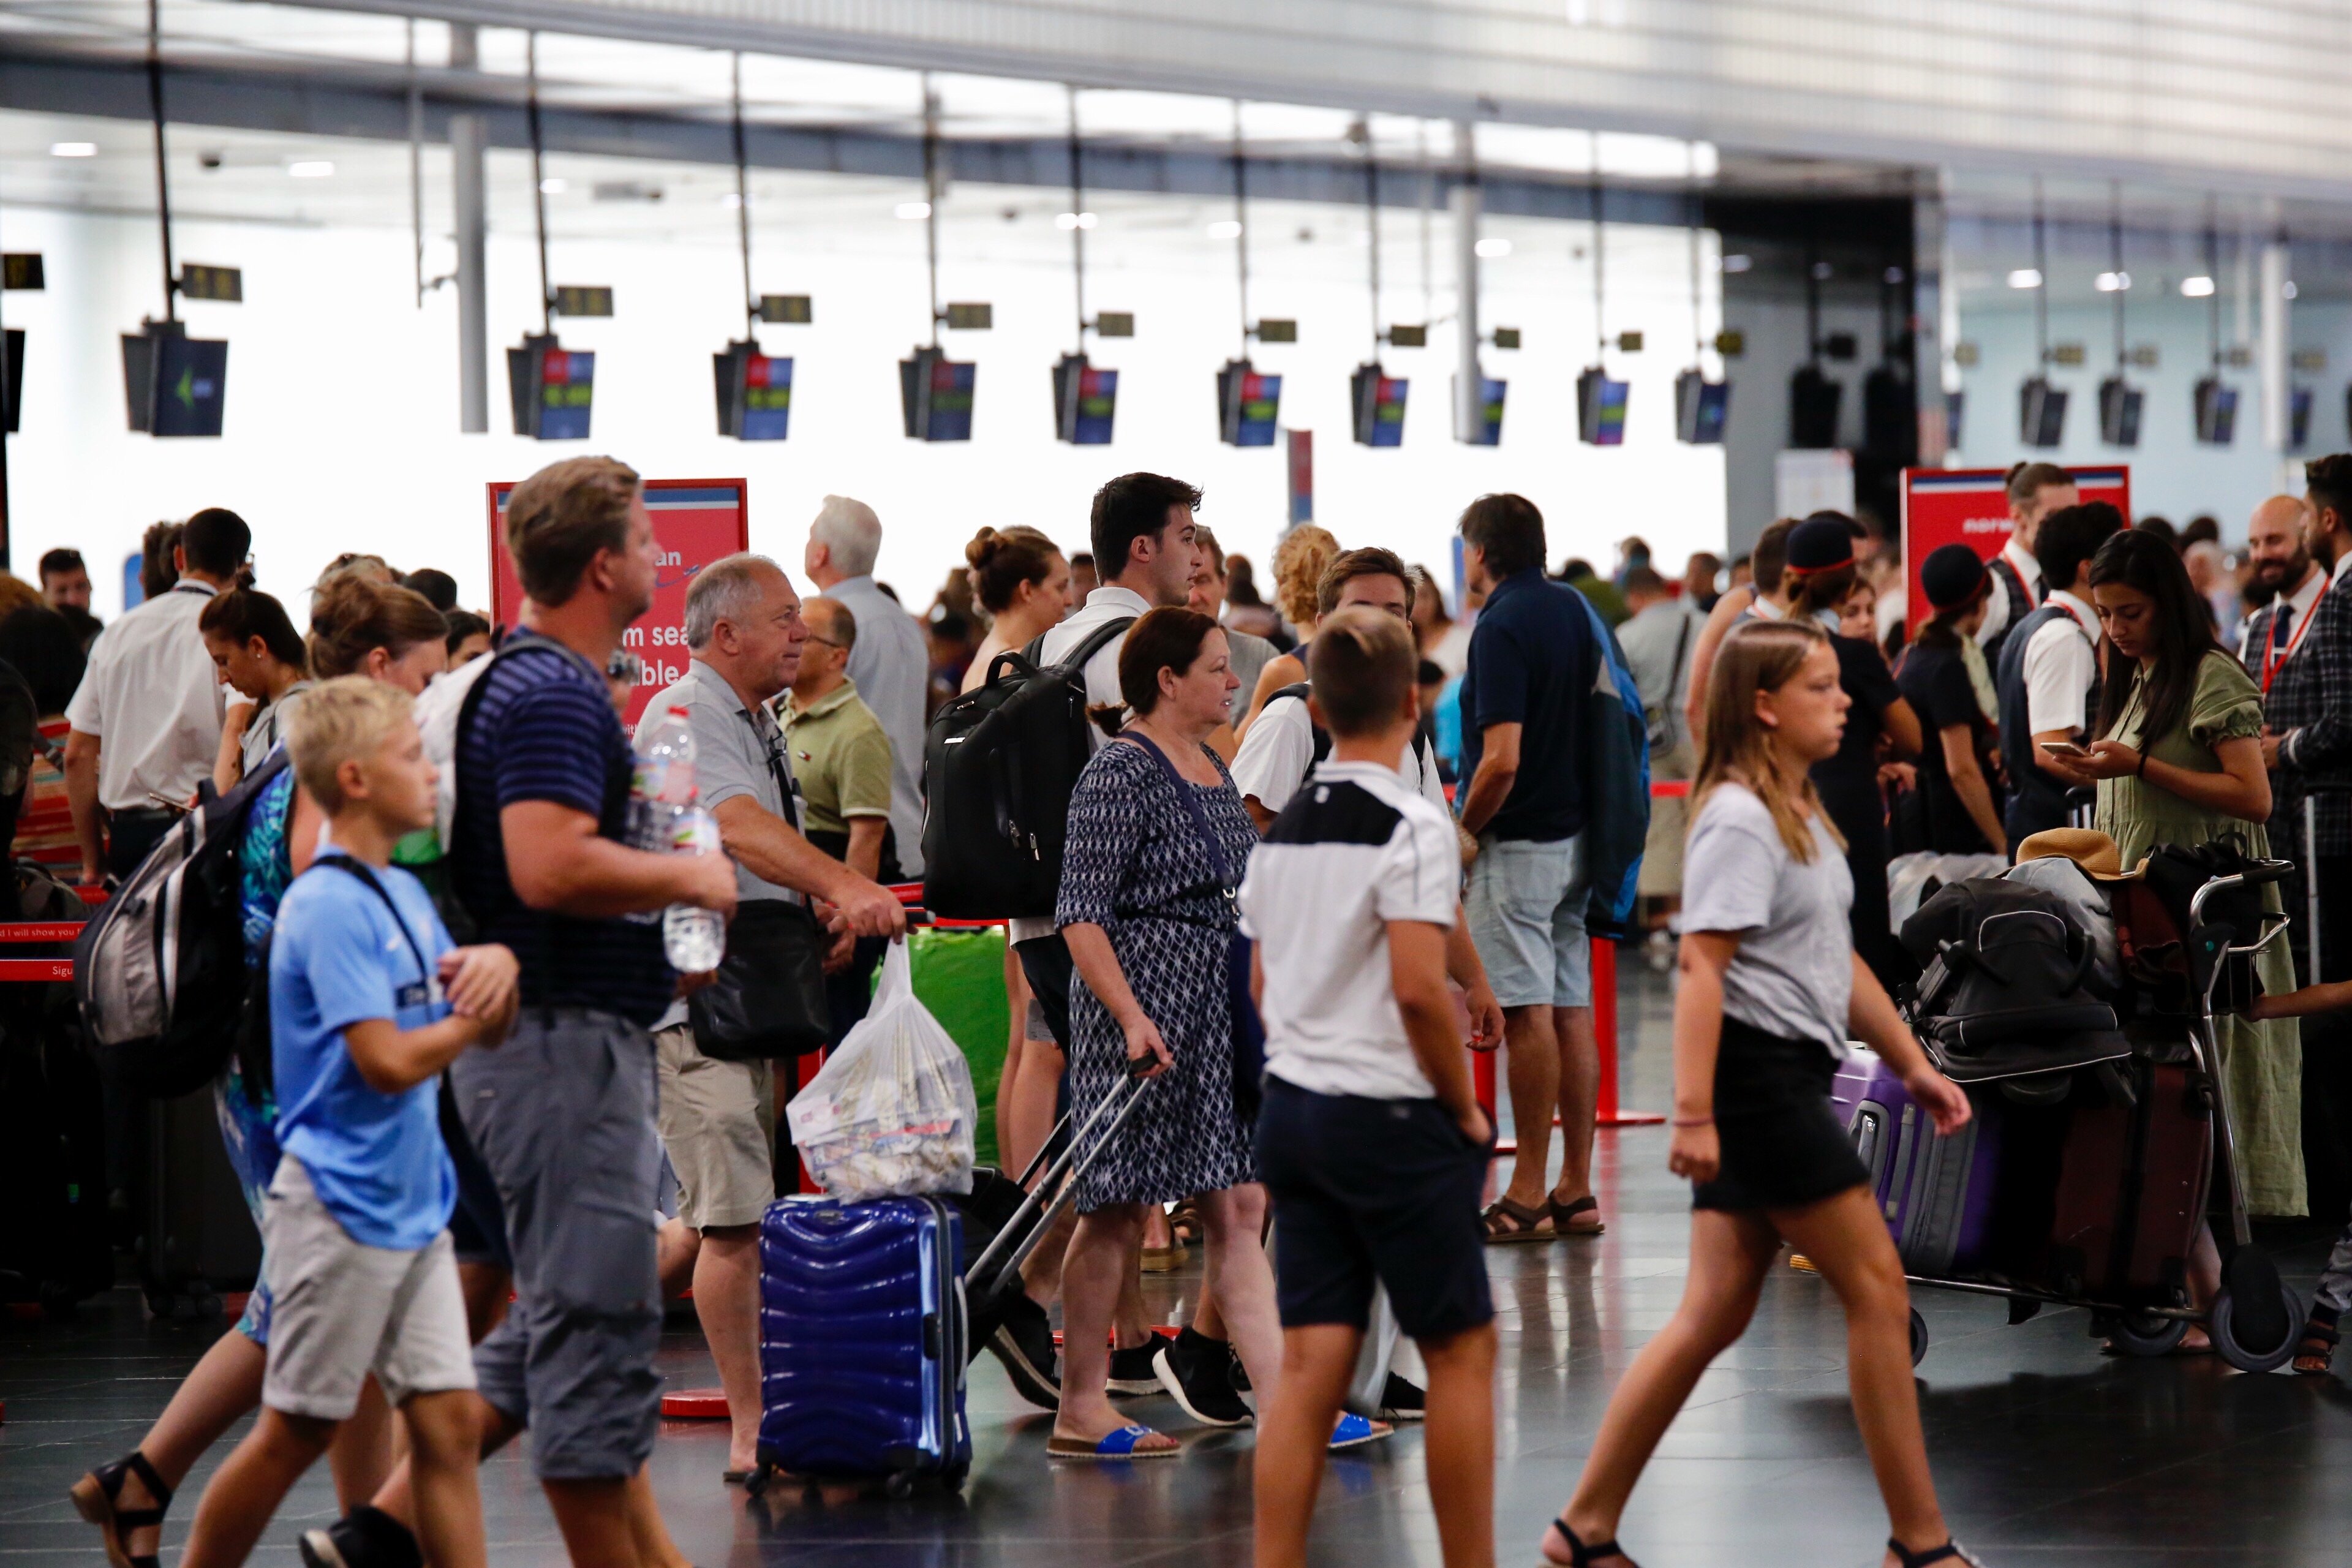 El Prat rep 4,54 milions de passatgers a l'octubre, un 8,8% més